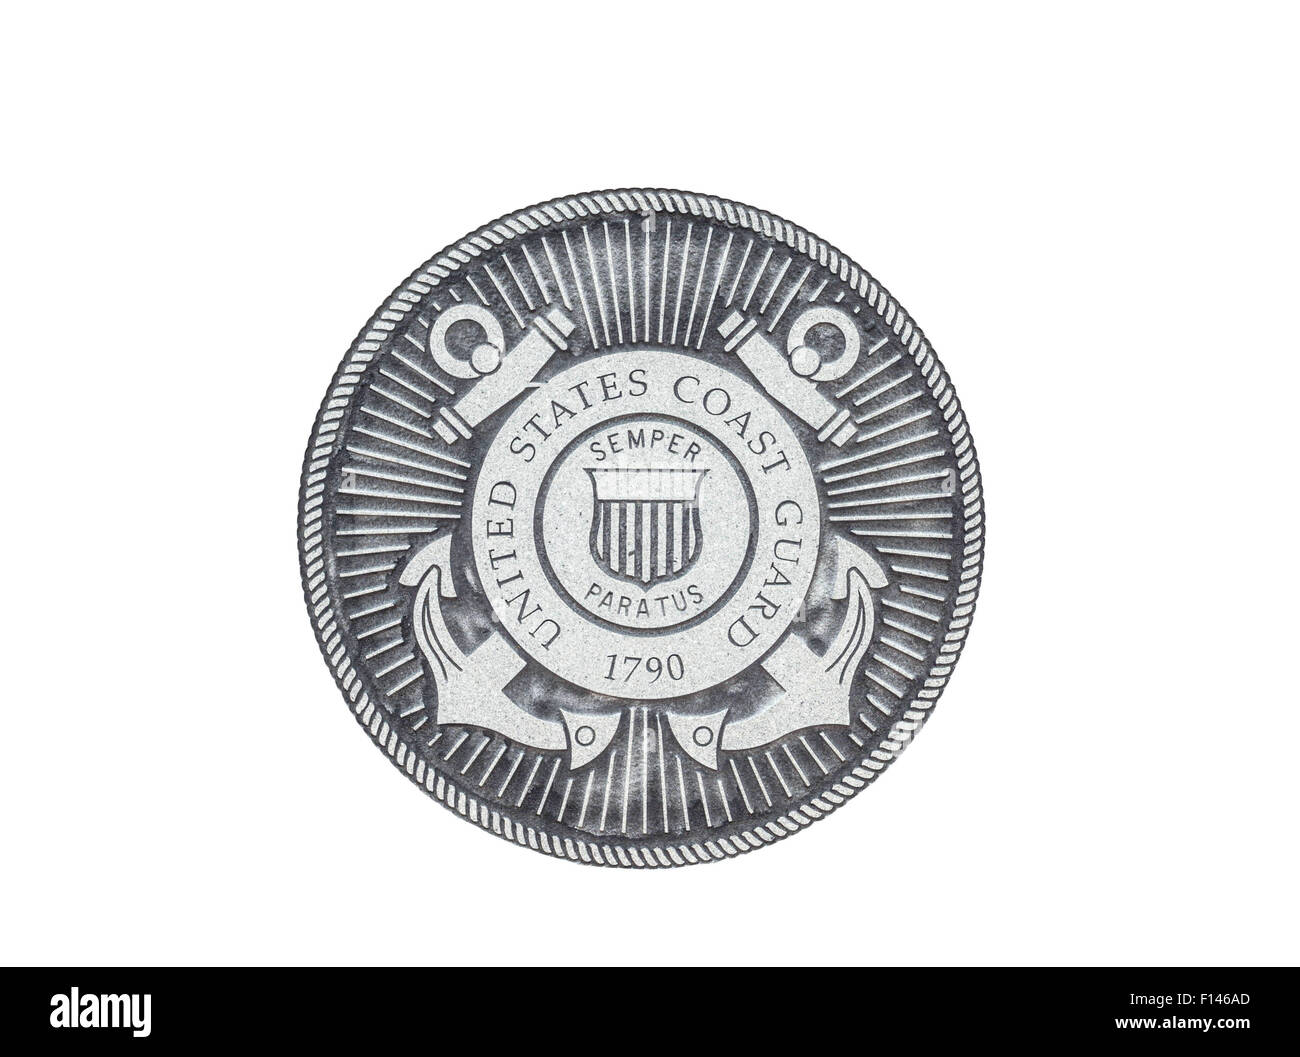 U.S. Coast Guard sceau officiel sur un fond blanc. Banque D'Images